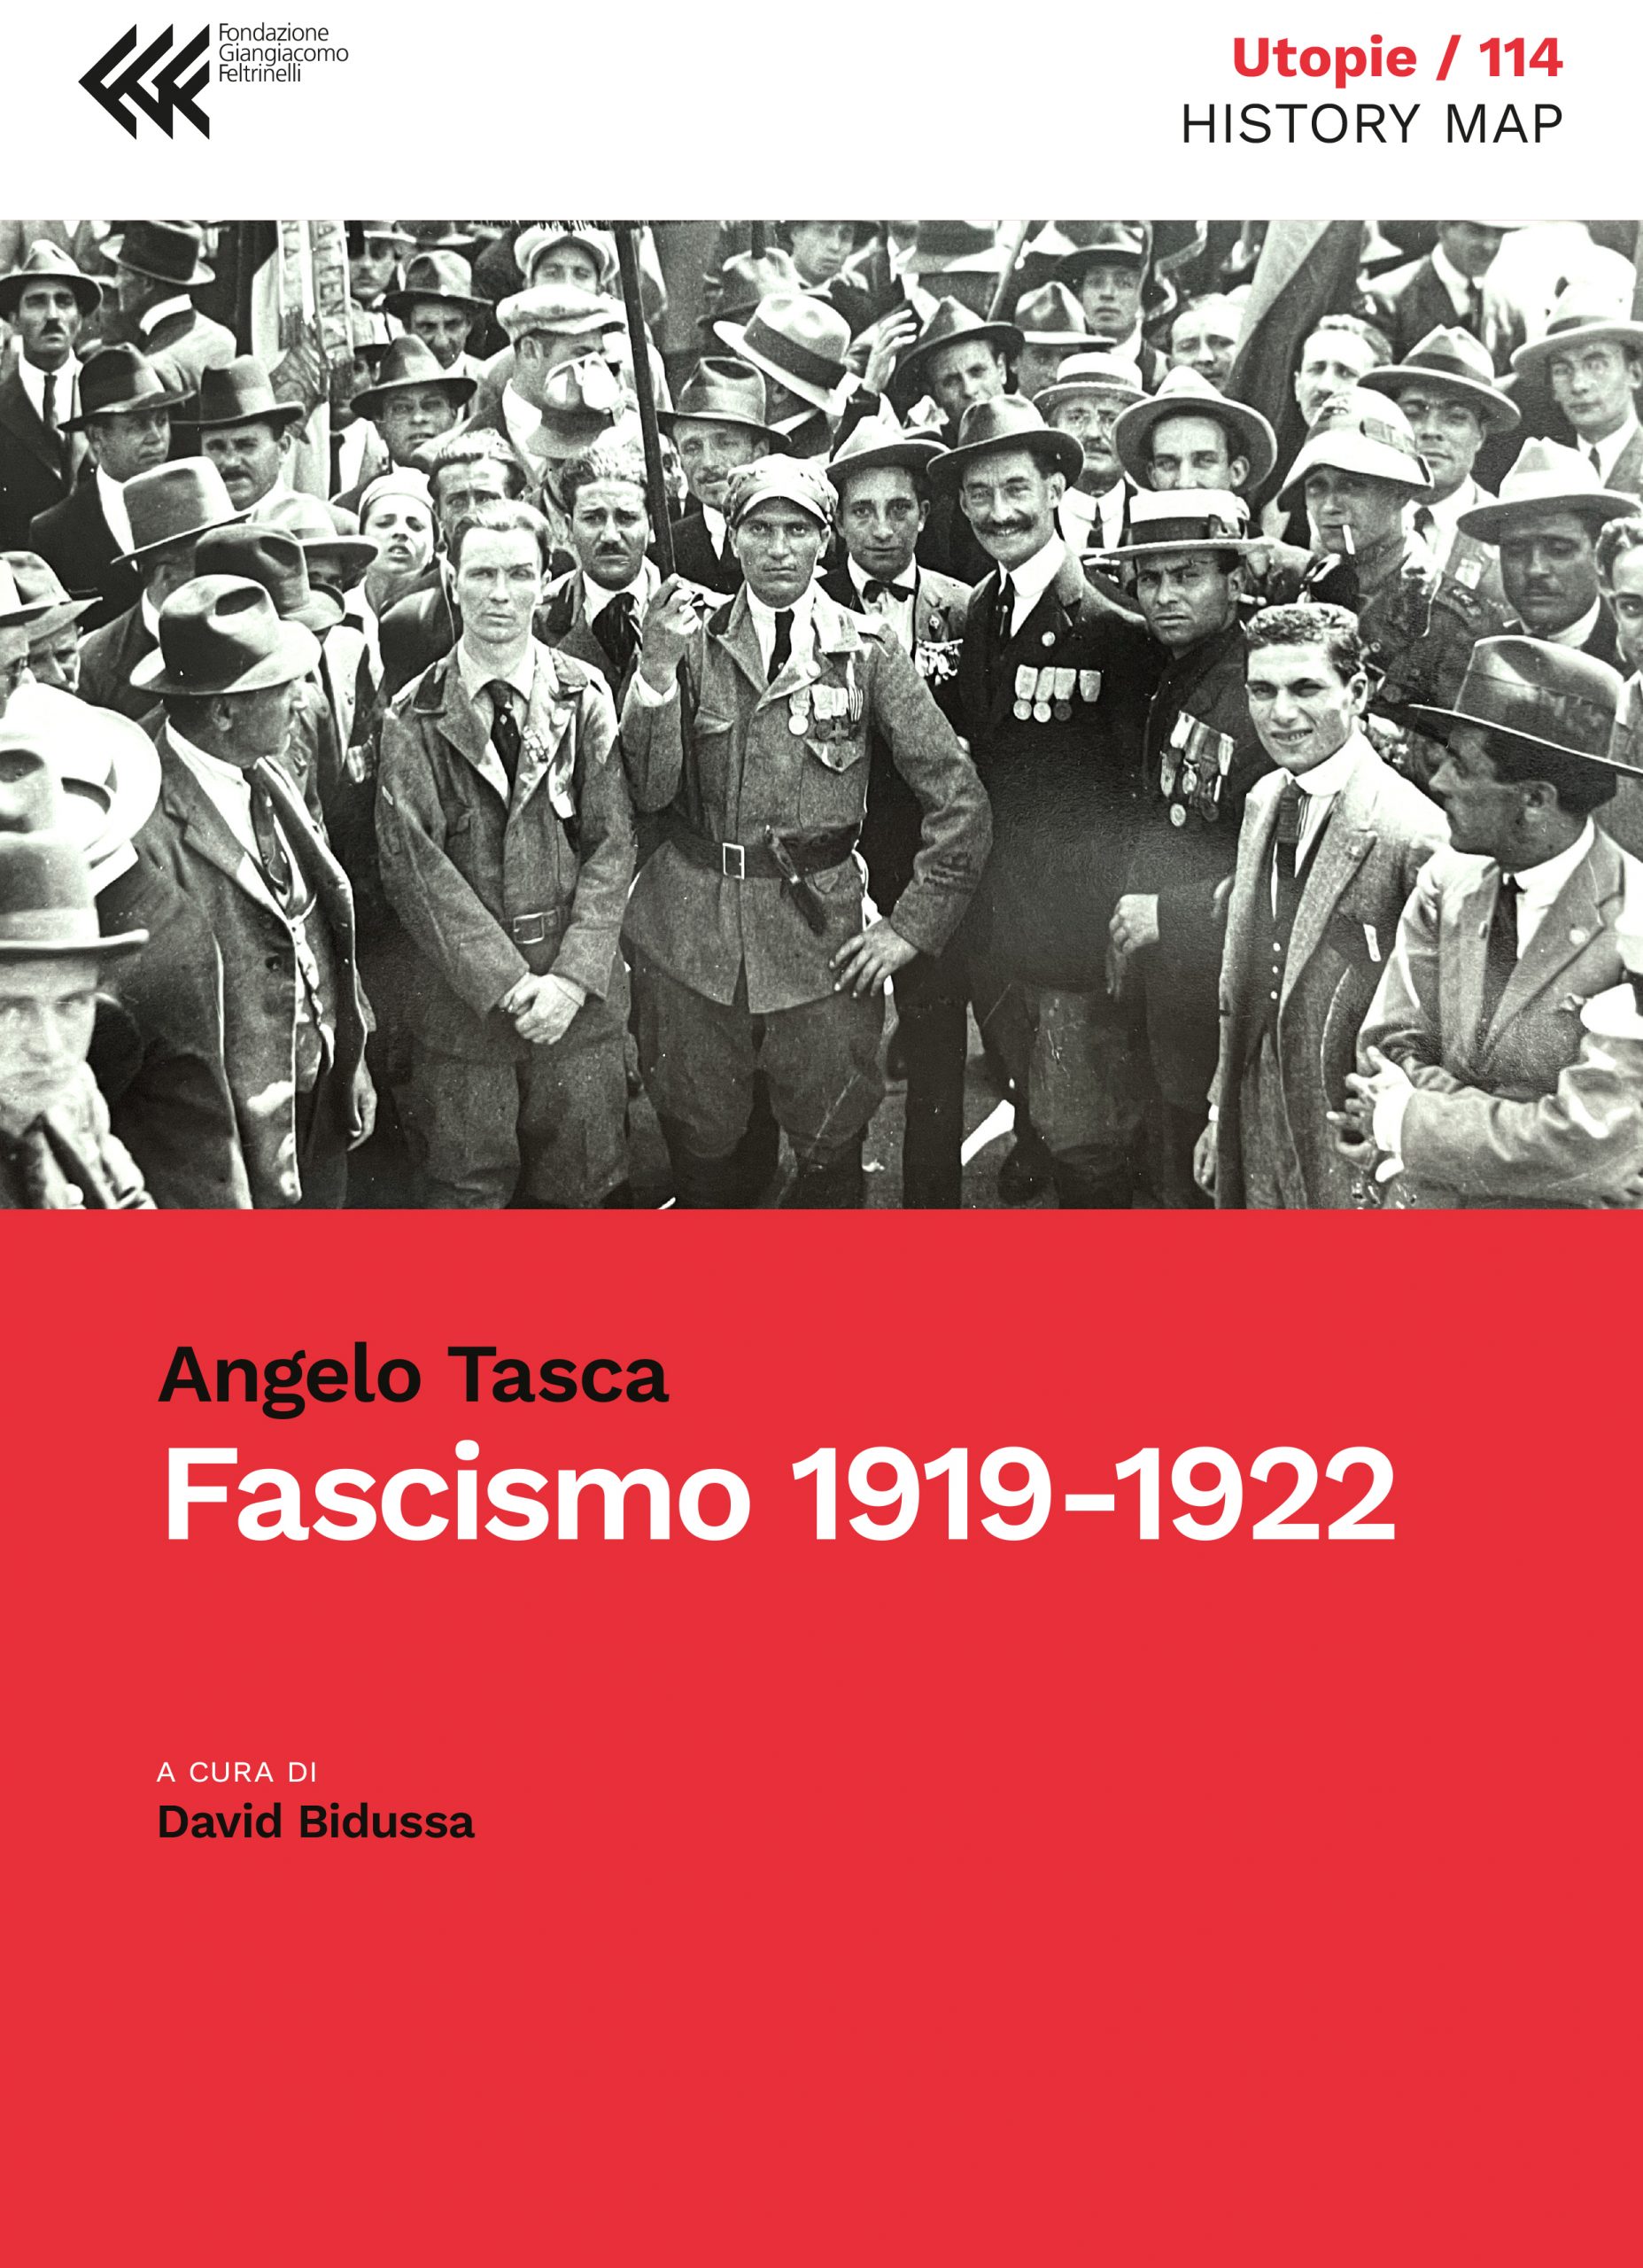 eBook:
 Fascismo 1919-1922
